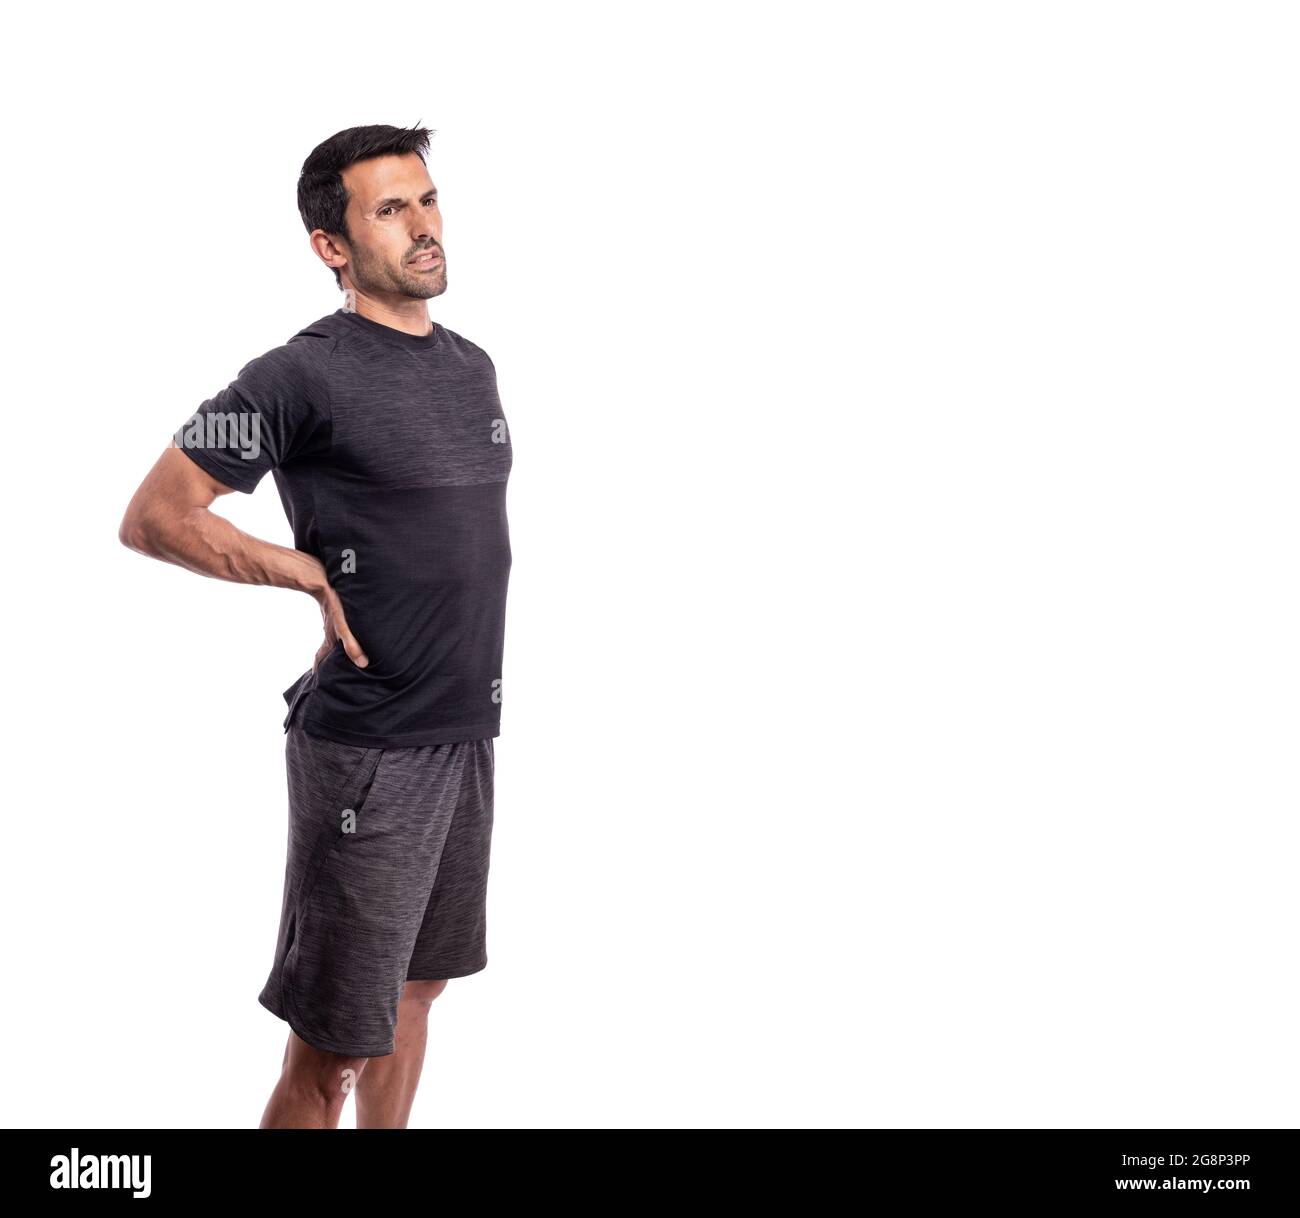 Athletischer Mann mittleren Alters mit Schmerzen in der Wirbelsäule. Auf einem isolierten weißen Hintergrund. Speicherplatz kopieren. Stockfoto